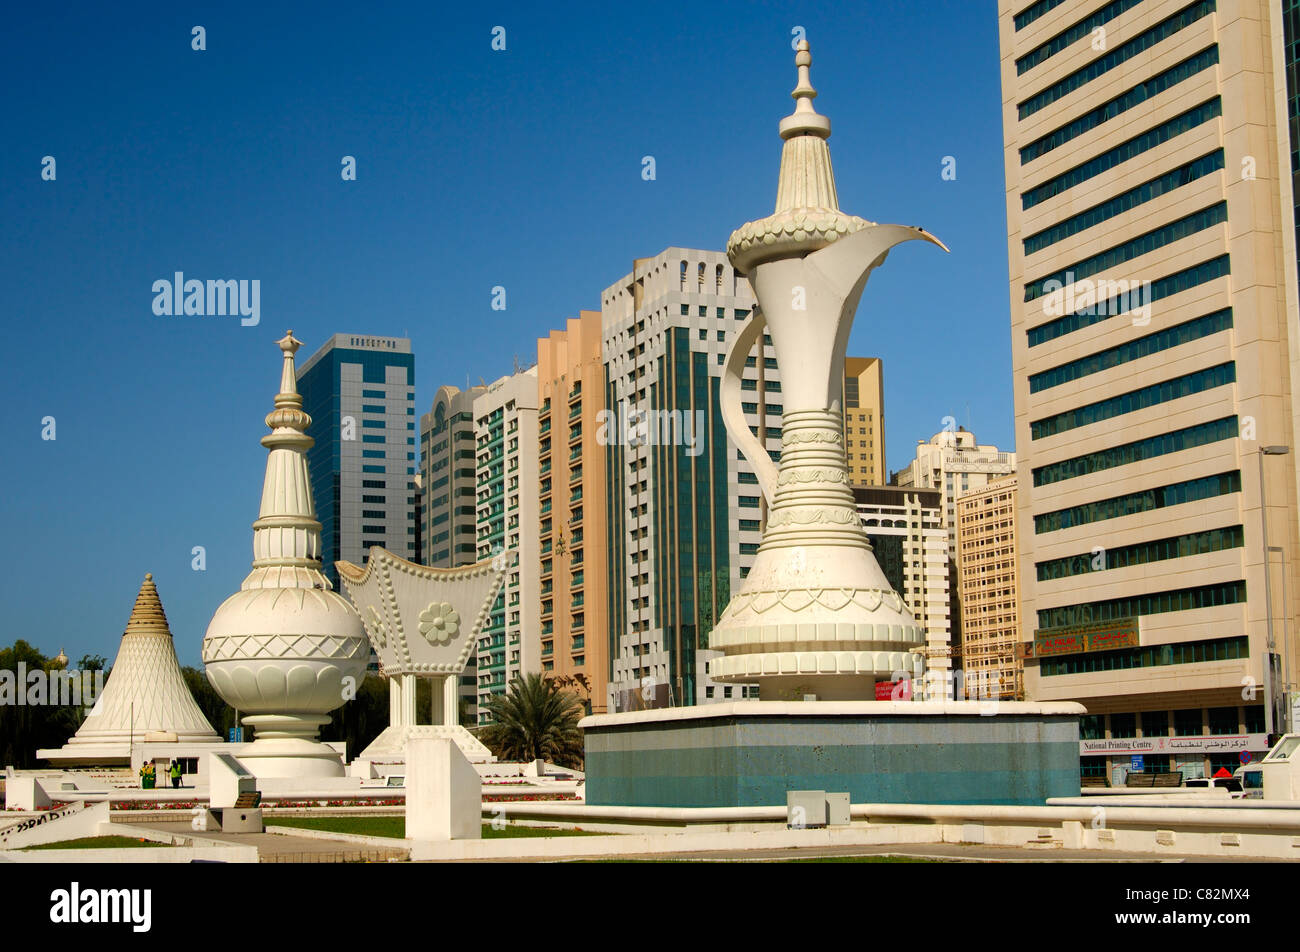 Des sculptures gigantesques comme des symboles de l'hospitalité et les traditions d'Oman sur l'Ittihad Square, Abu Dhabi, Émirats Arabes Unis Banque D'Images